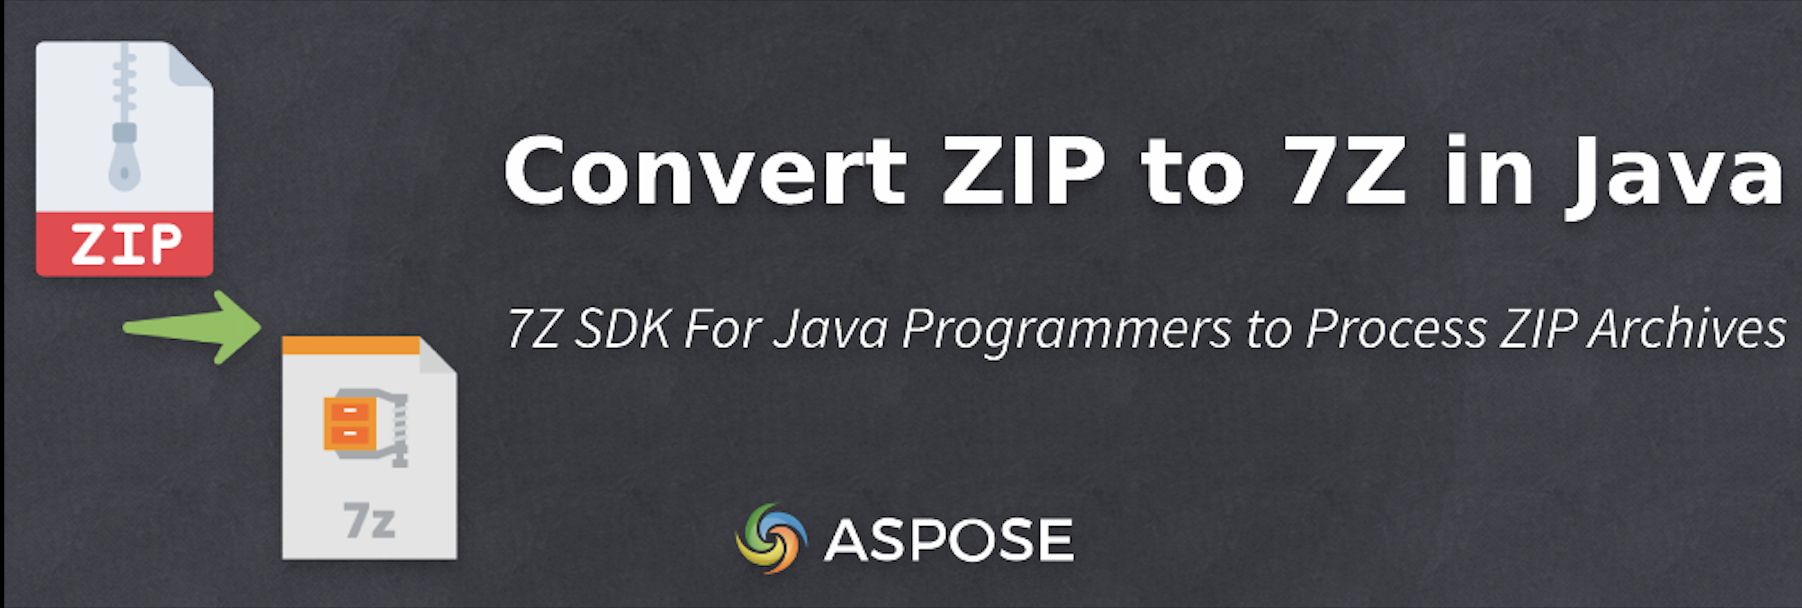 Convert ZIP to 7Z in Java